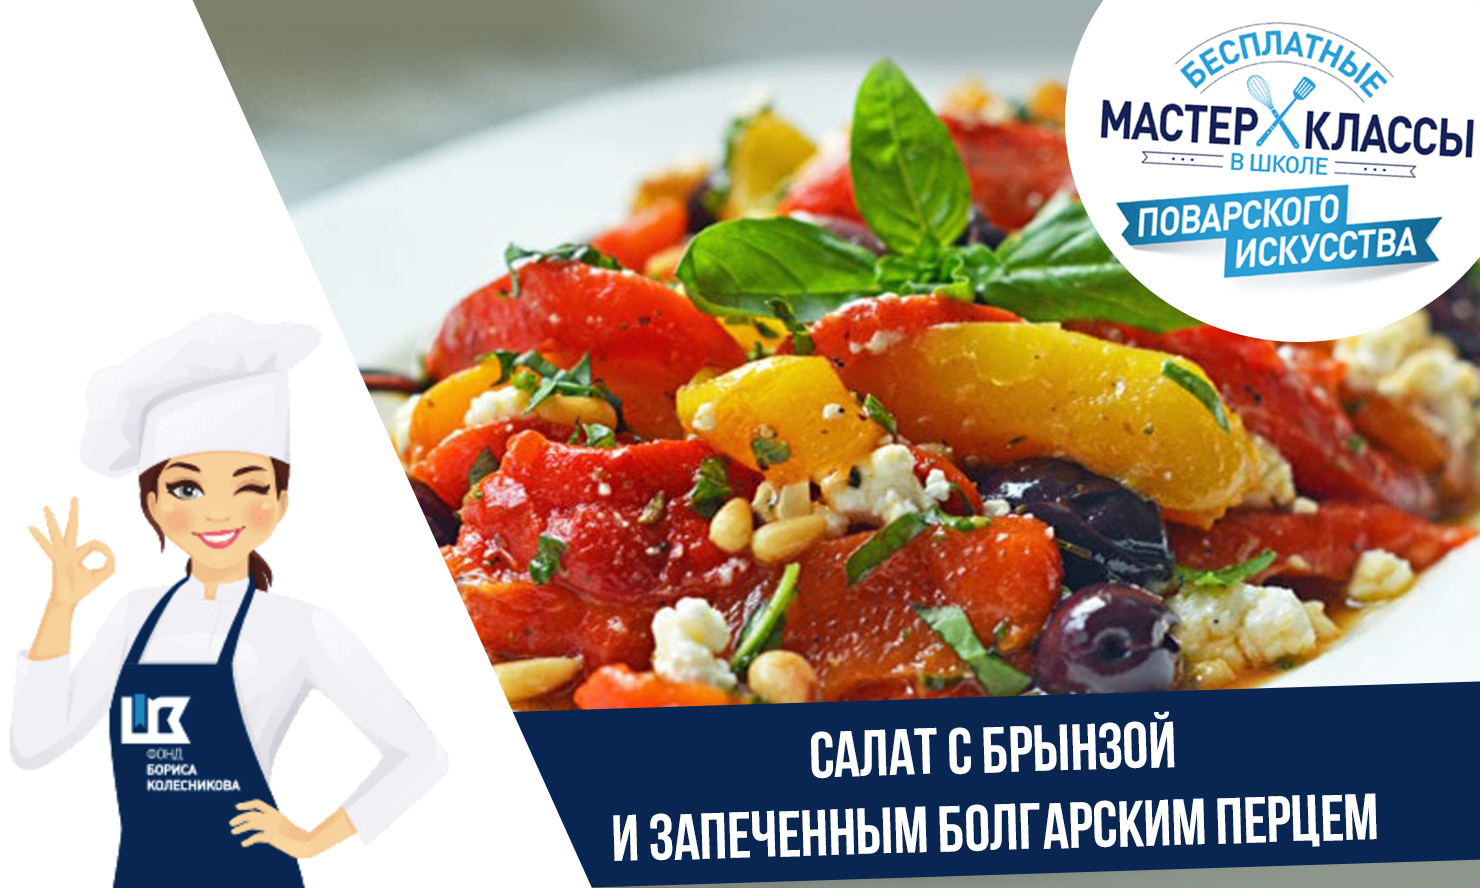 Рецепт от шеф-повара: салат с брынзой и запеченным болгарским перцем